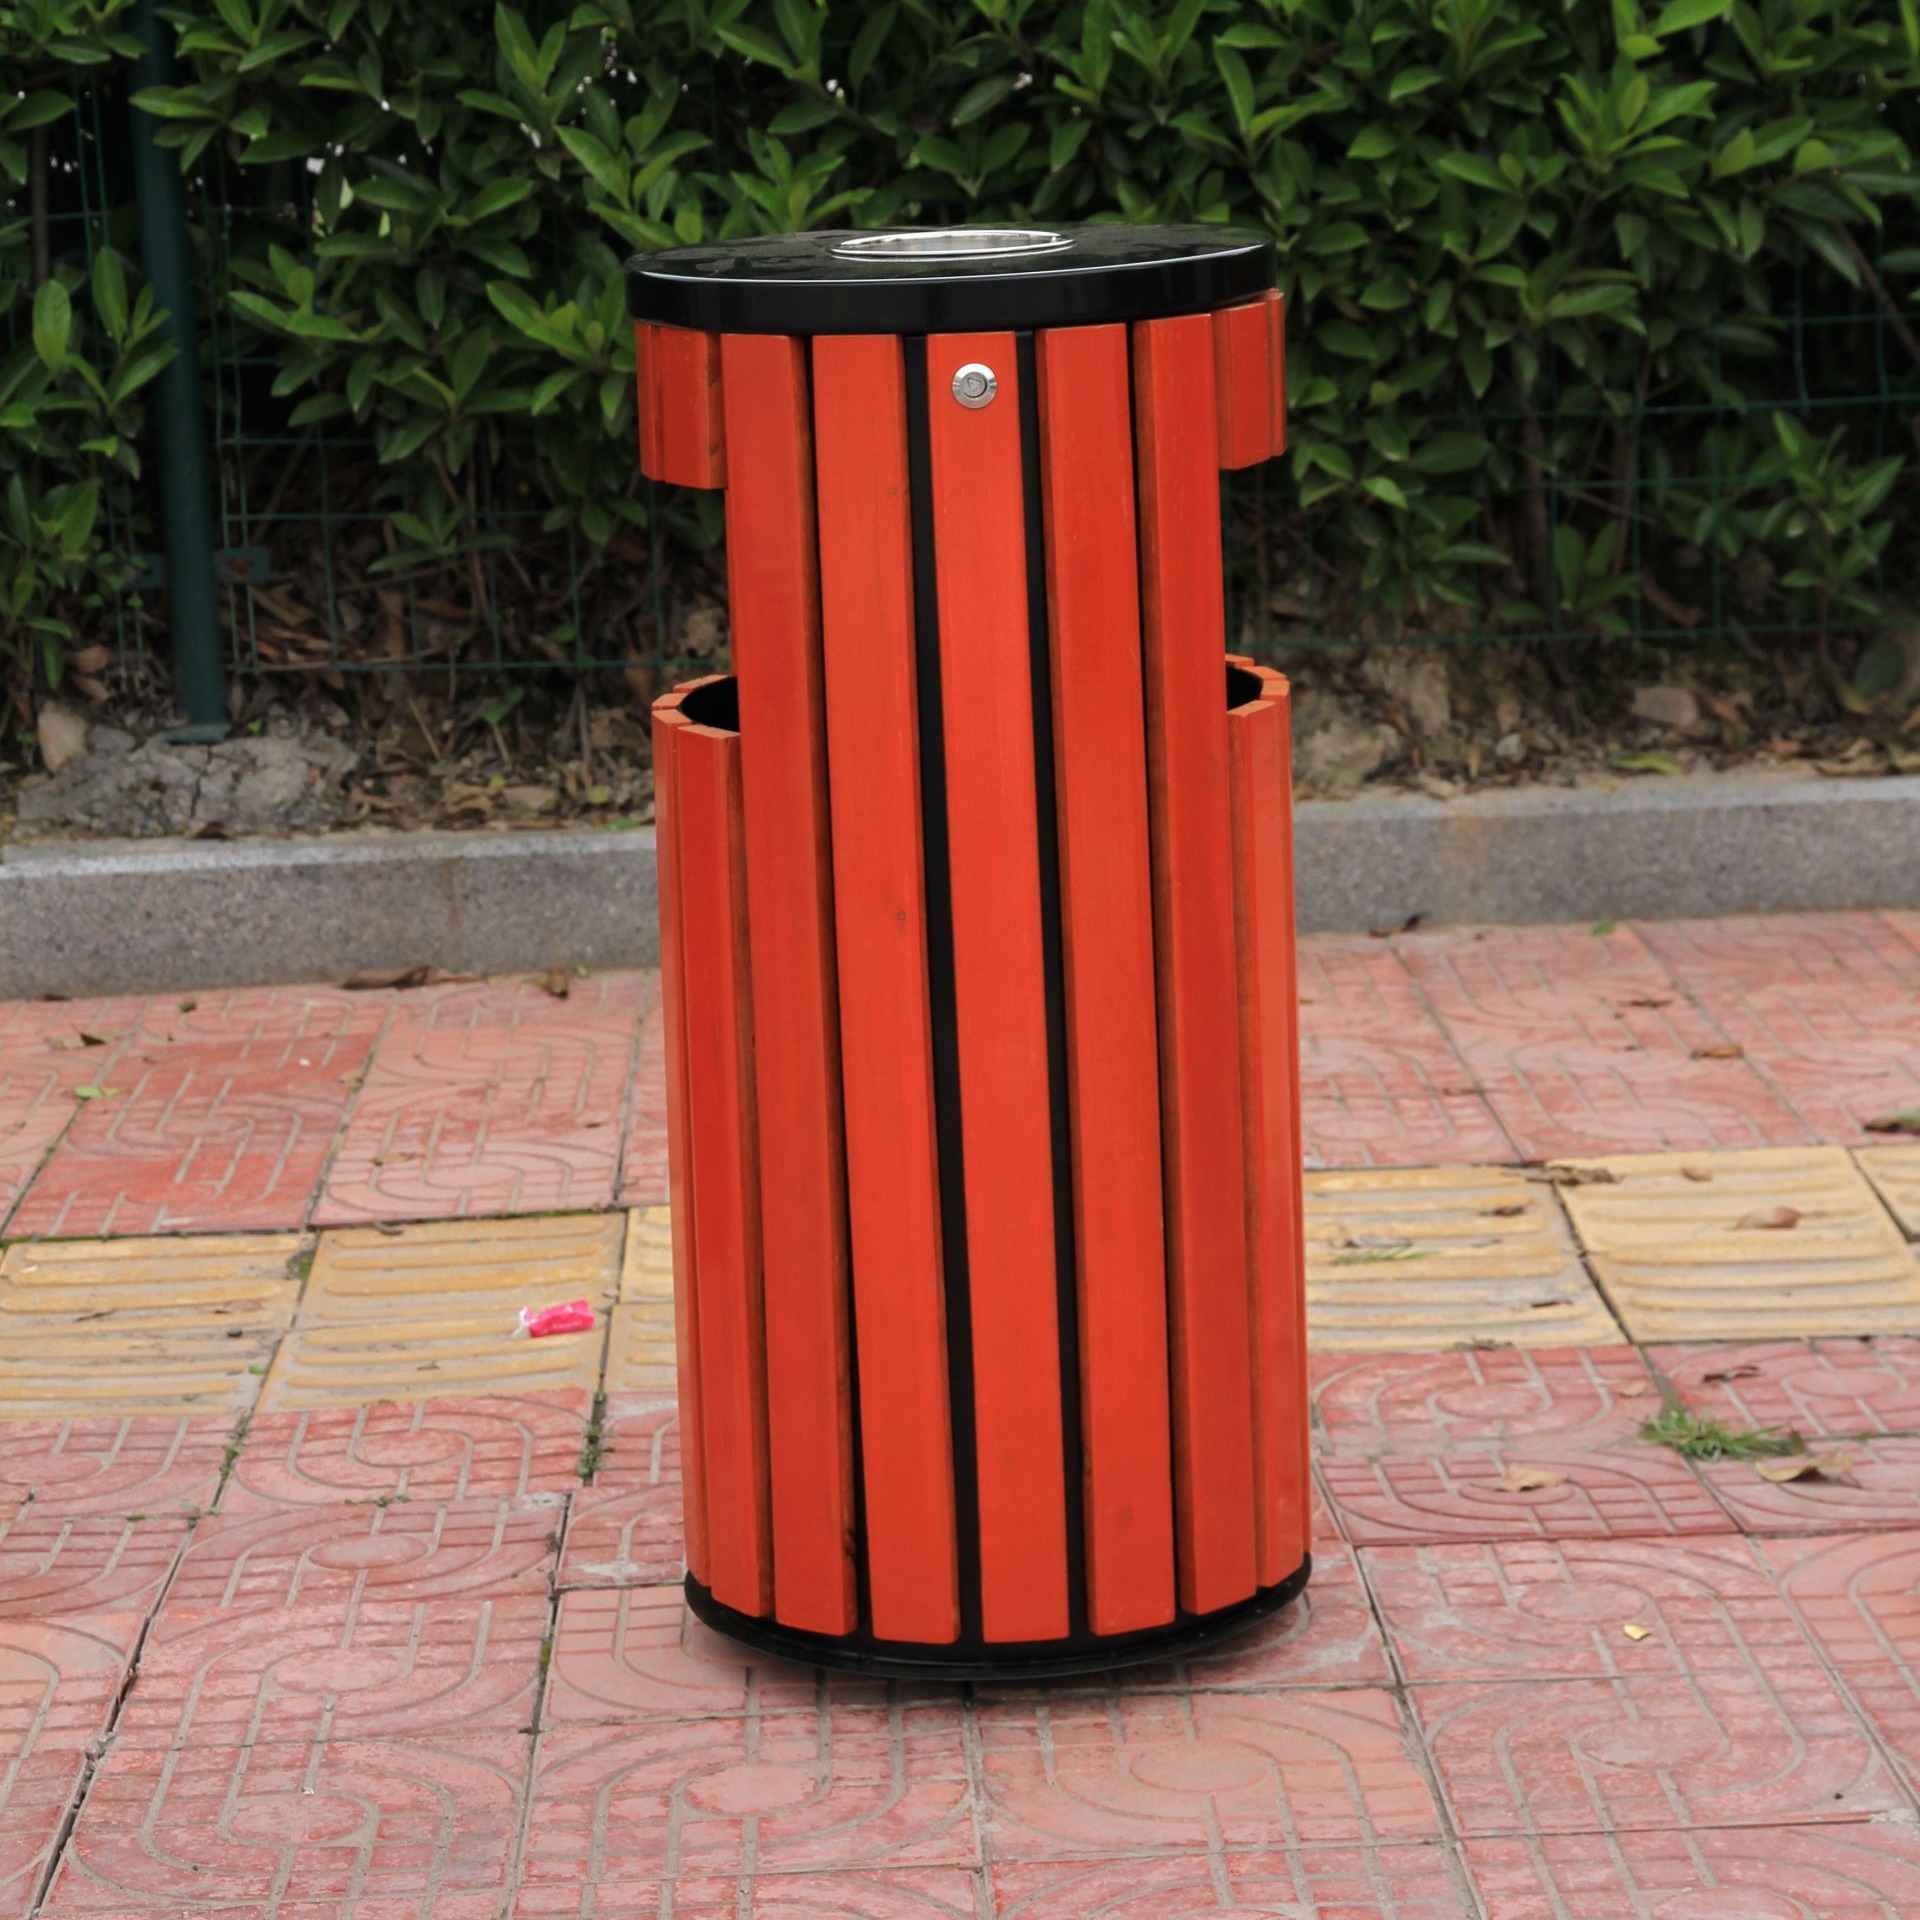 不锈钢垃圾桶 环保分类垃圾桶  木条垃圾桶  钢制分类垃圾桶   塑料垃圾桶